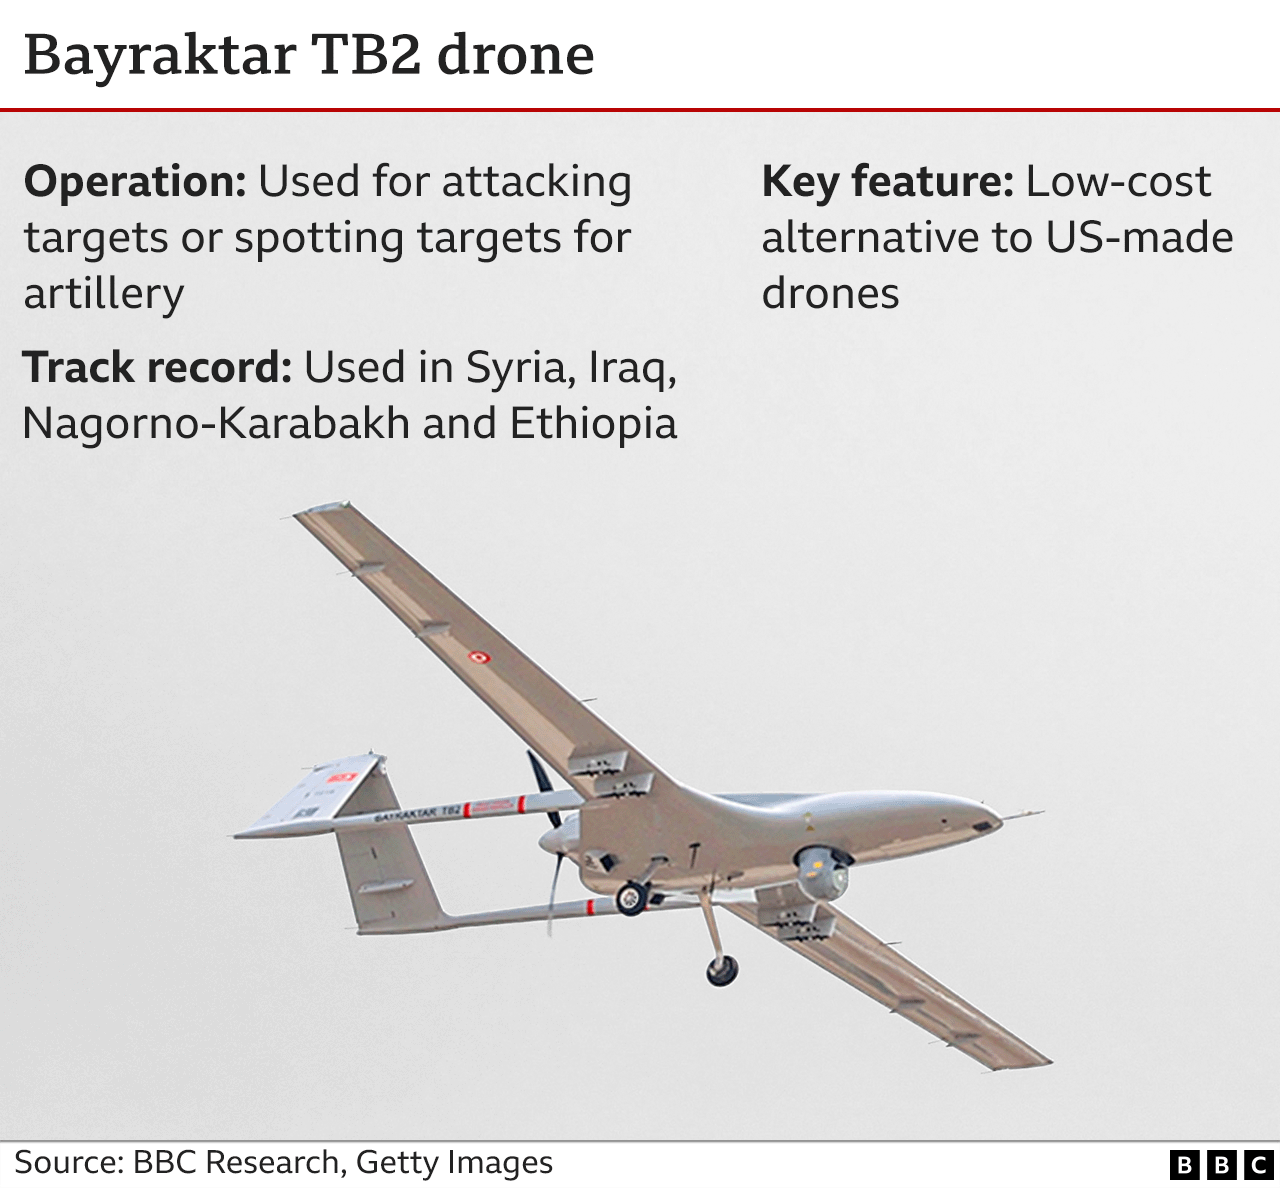 Gráficos que muestran las características del dron Bayraktar TB2.  El Bayraktar TB2 es una alternativa de bajo costo a los drones fabricados en EE. UU. y puede usarse para atacar directamente o coordinar ataques con otros sistemas en objetivos.